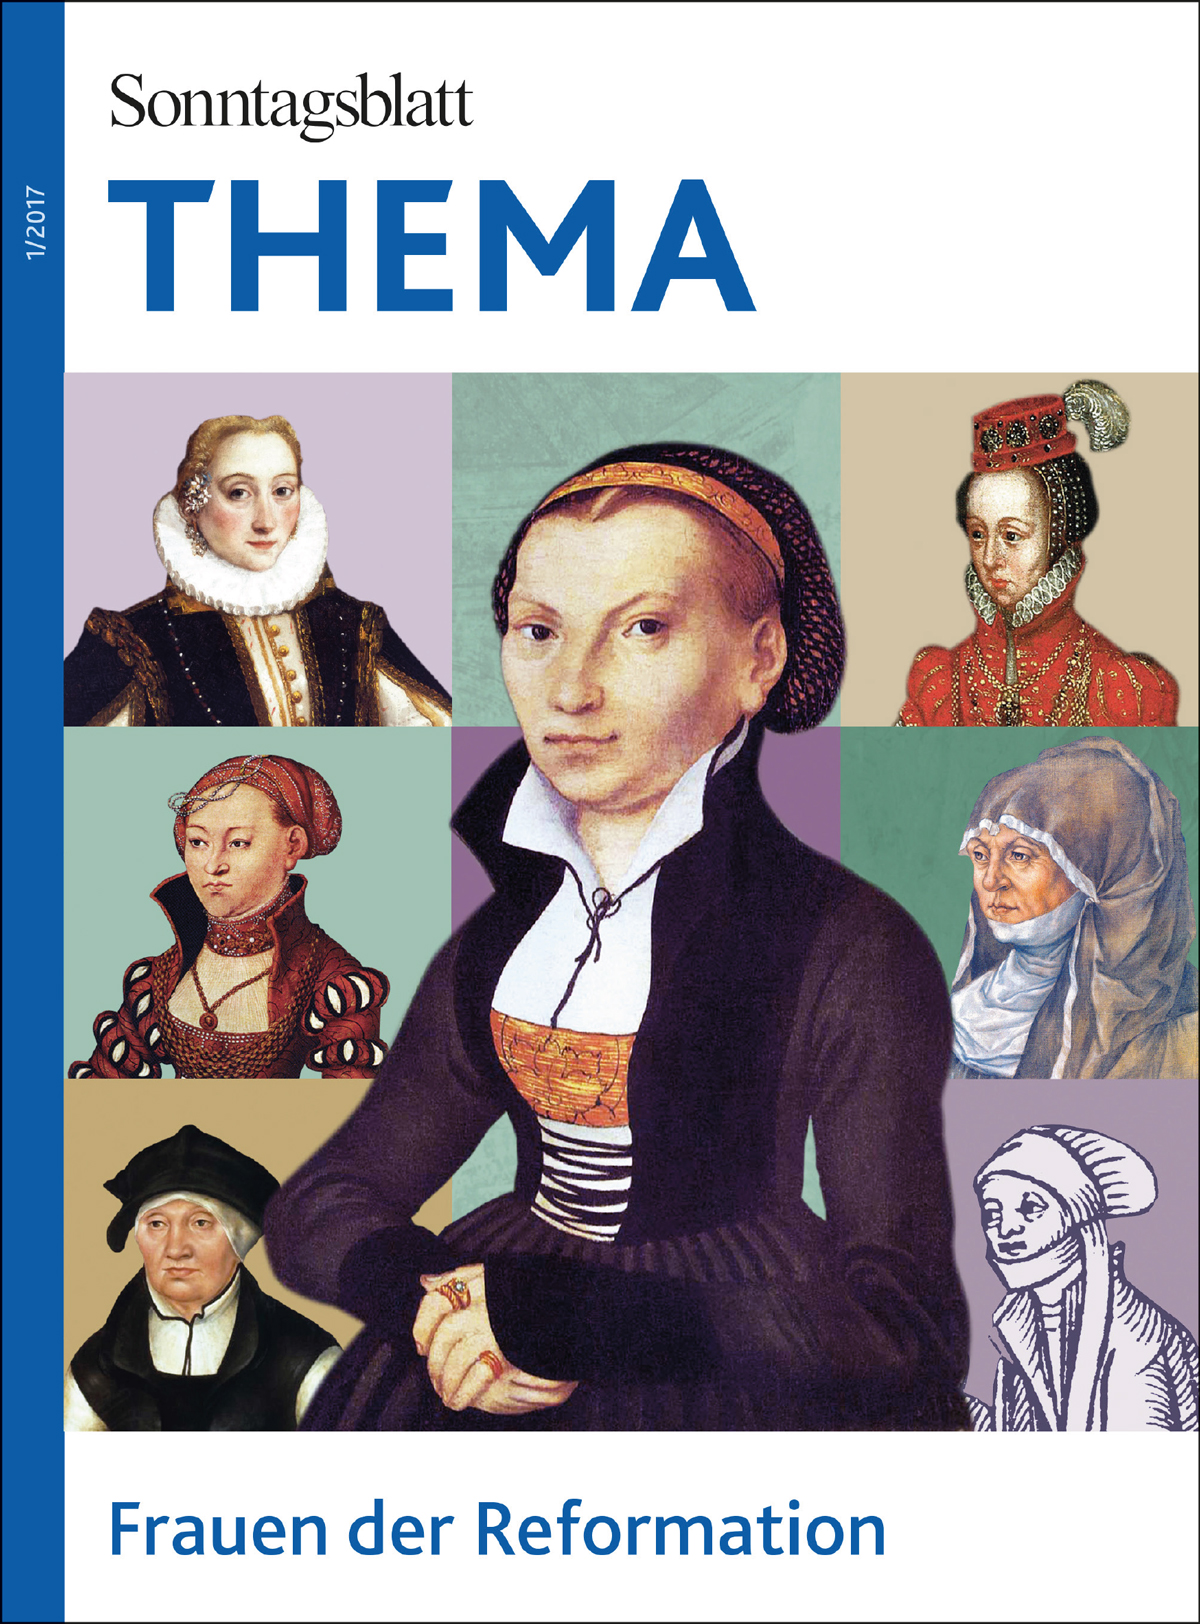 Sonntagsblatt THEMA: Frauen der Reformation